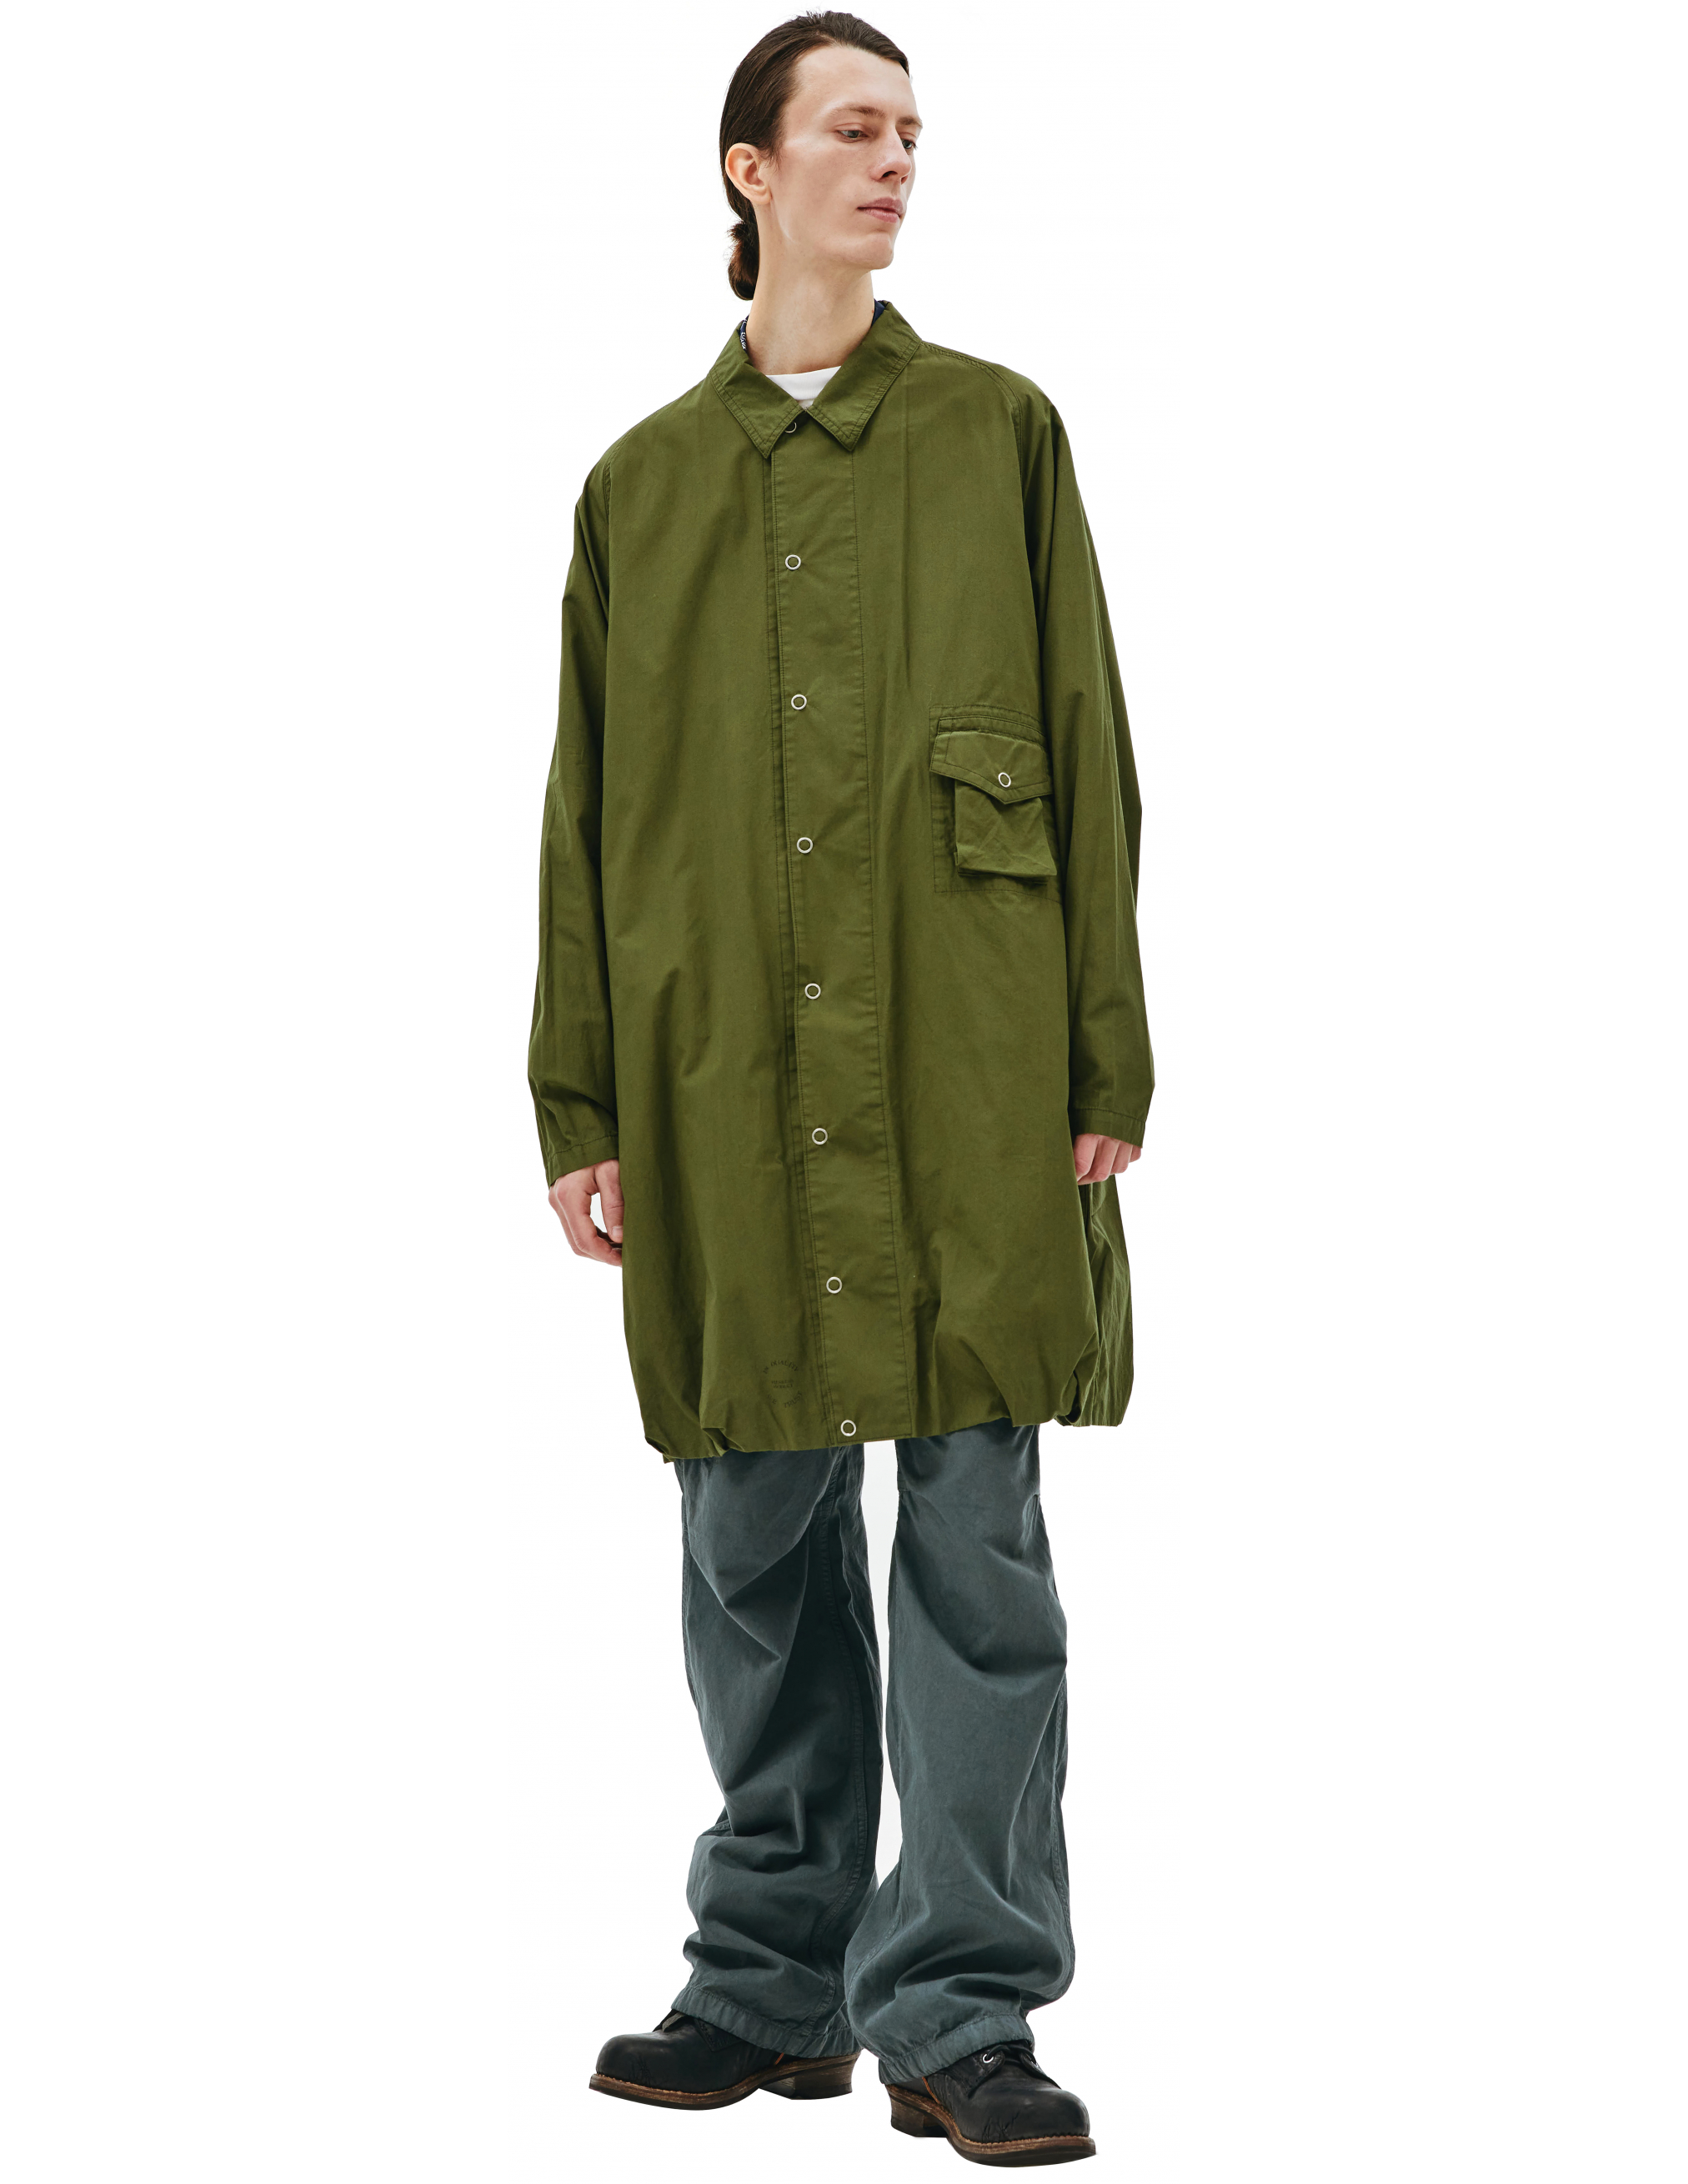 Пальто из хлопка с накладным карманом Visvim 0121205013027/olive, размер 5;4